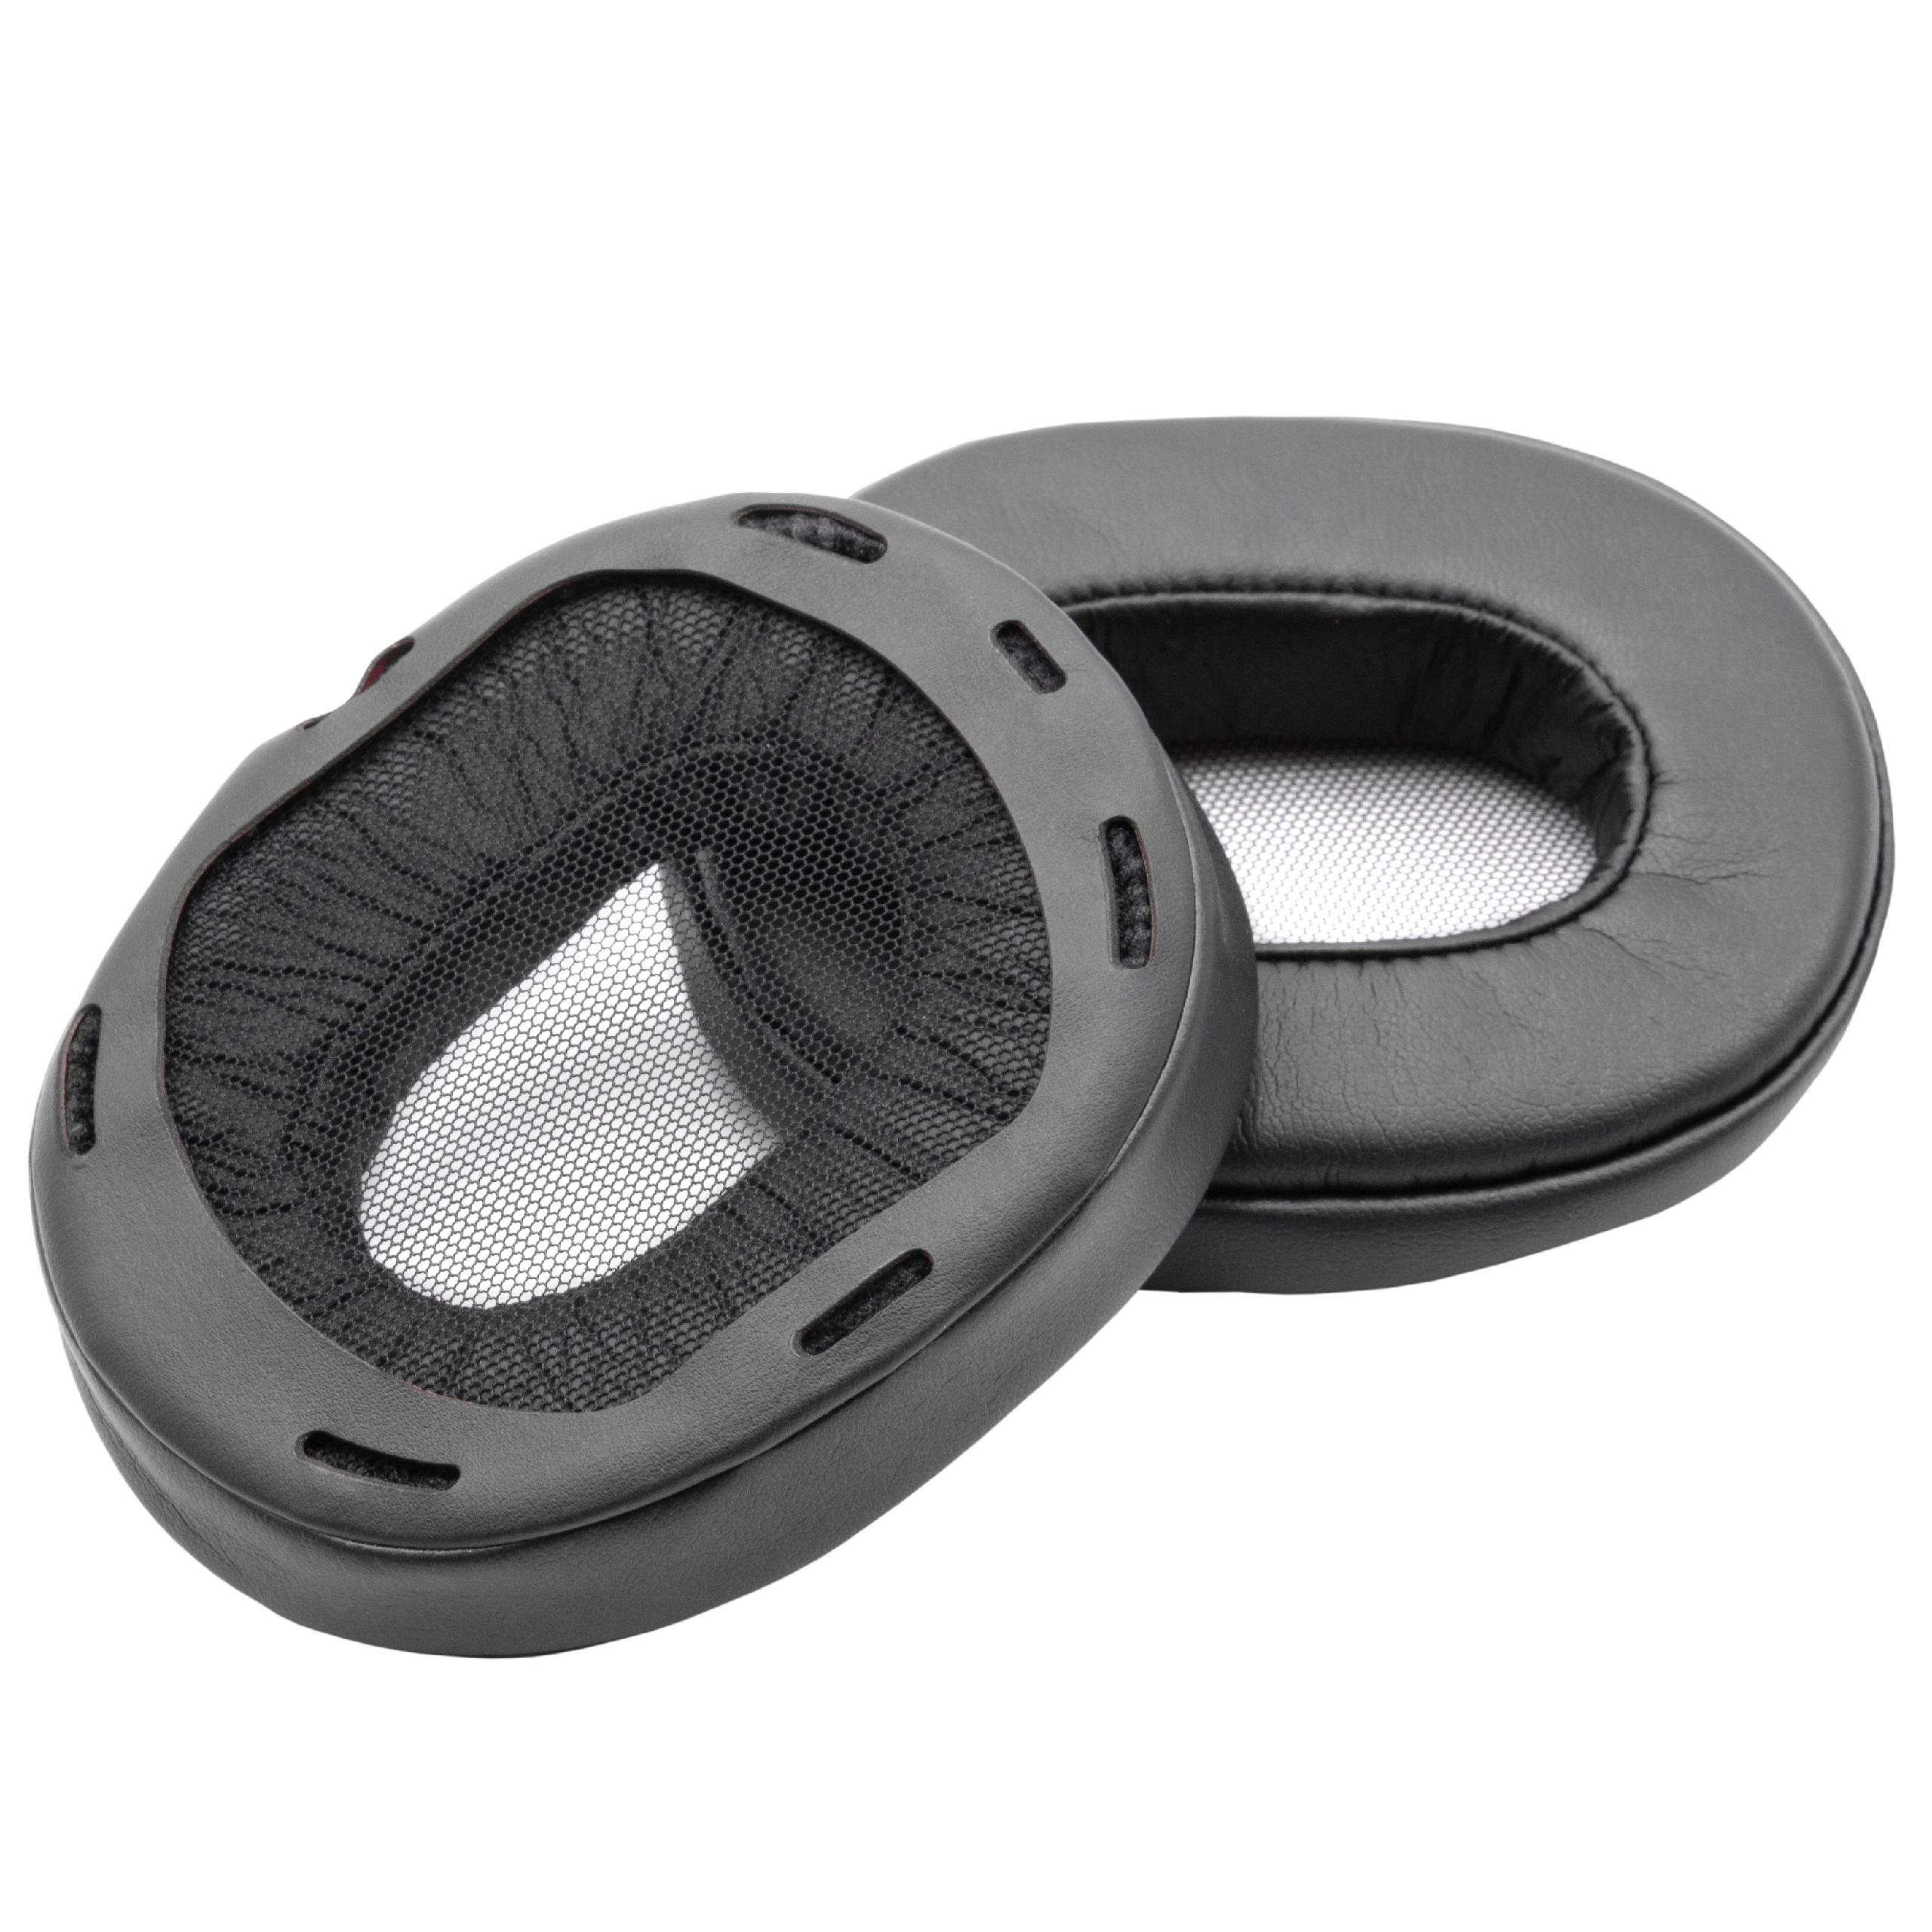 Ohrenpolster passend für Sony MDR-1A Kopfhörer u.a. - Polyurethan / Schaumstoff, 9,4 x 7,6 cm, 20 mm stark, Sc